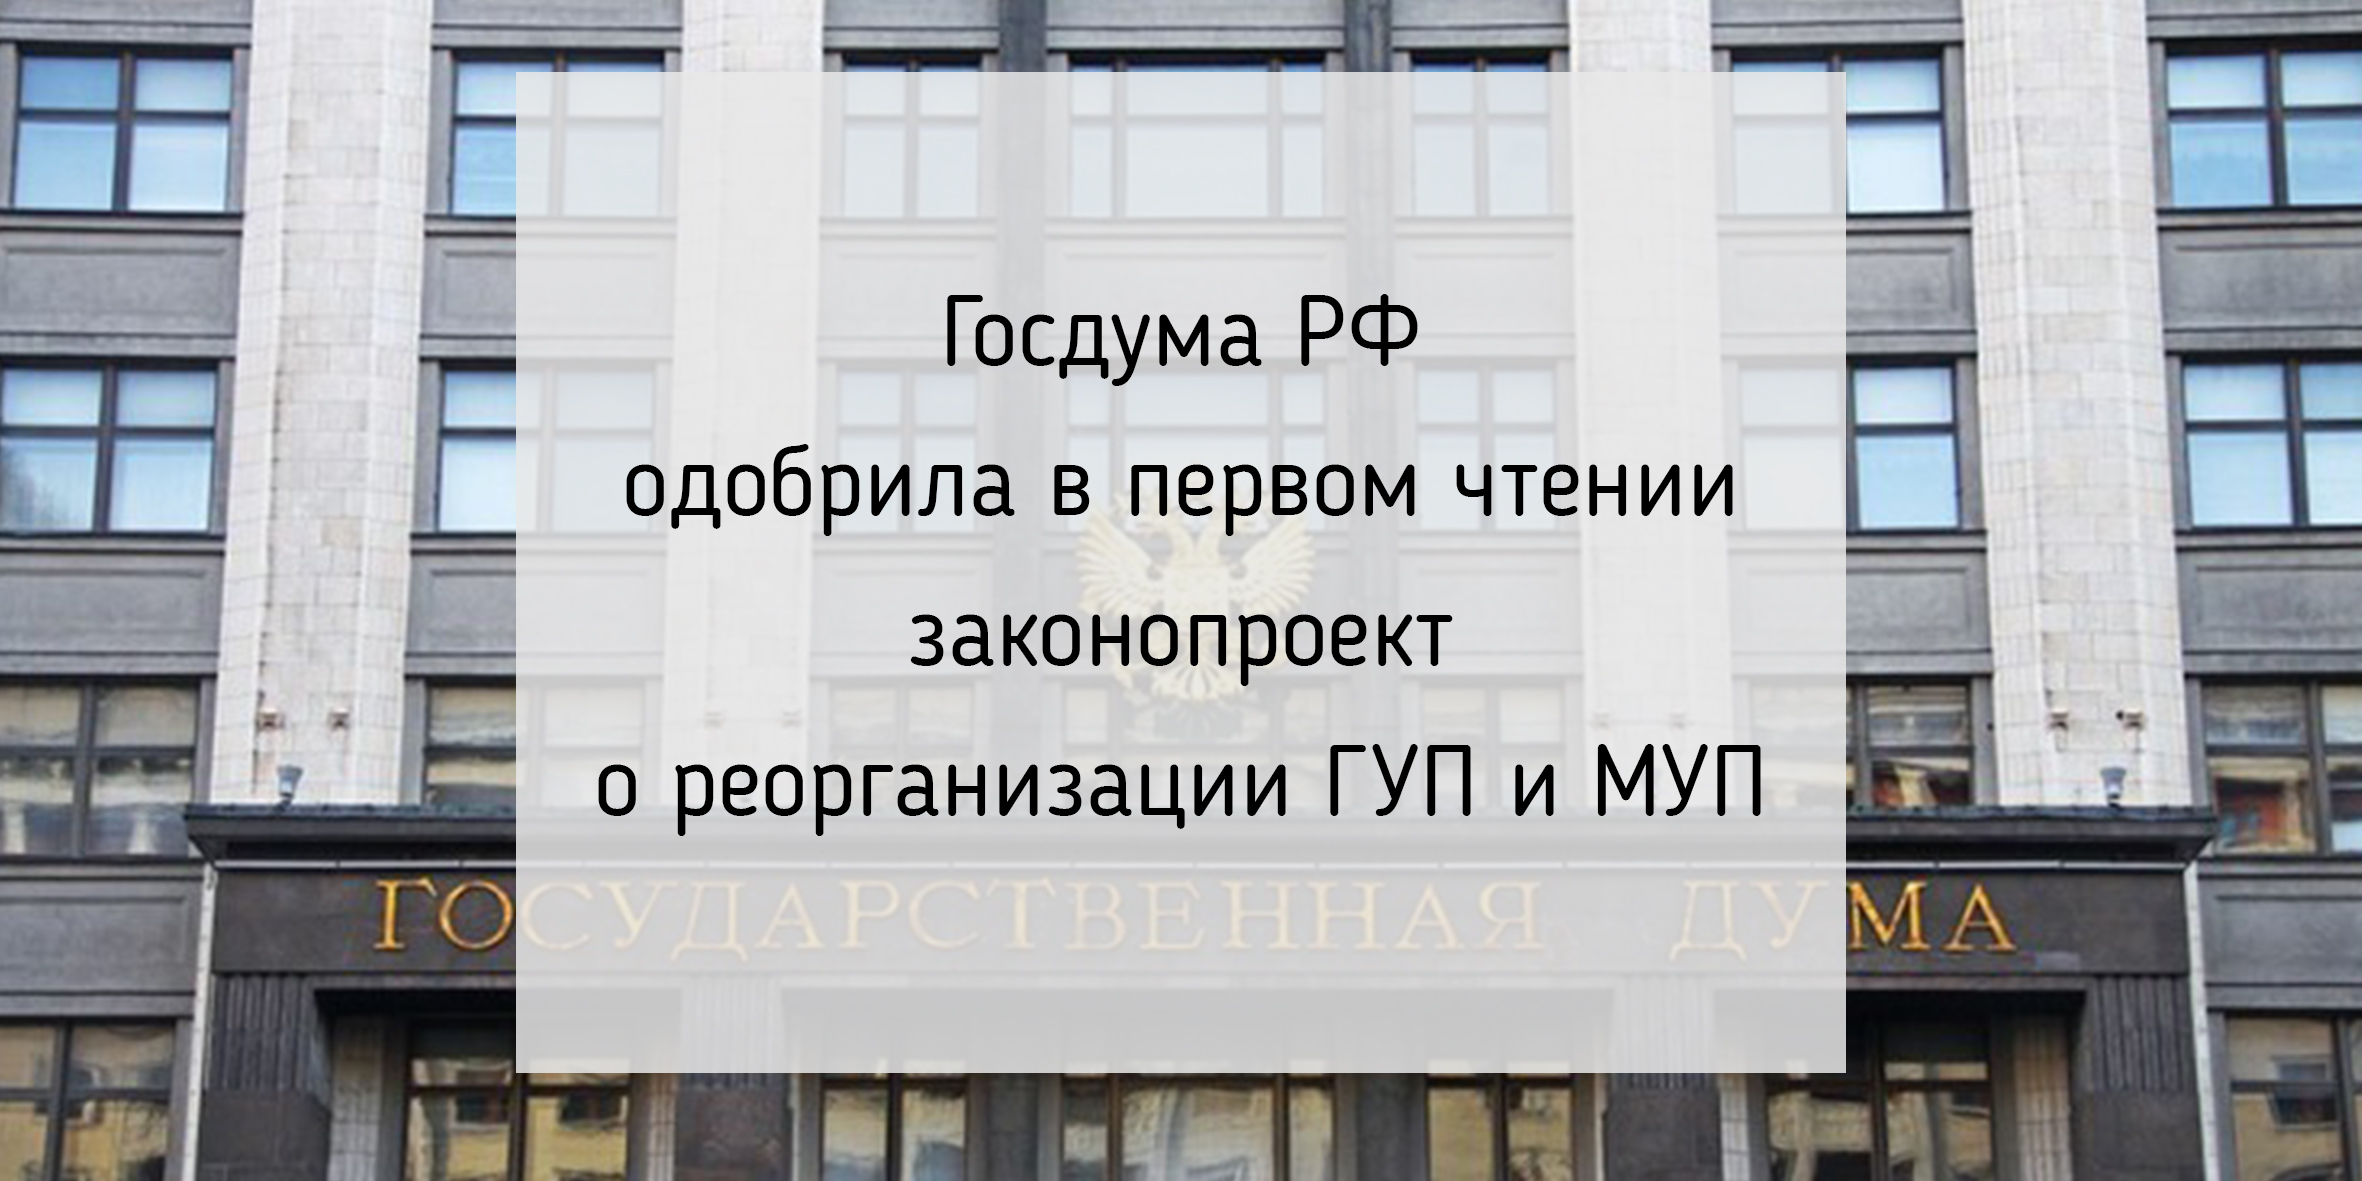 Госдума РФ одобрила в первом чтении законопроект о реорганизации ГУП и МУП